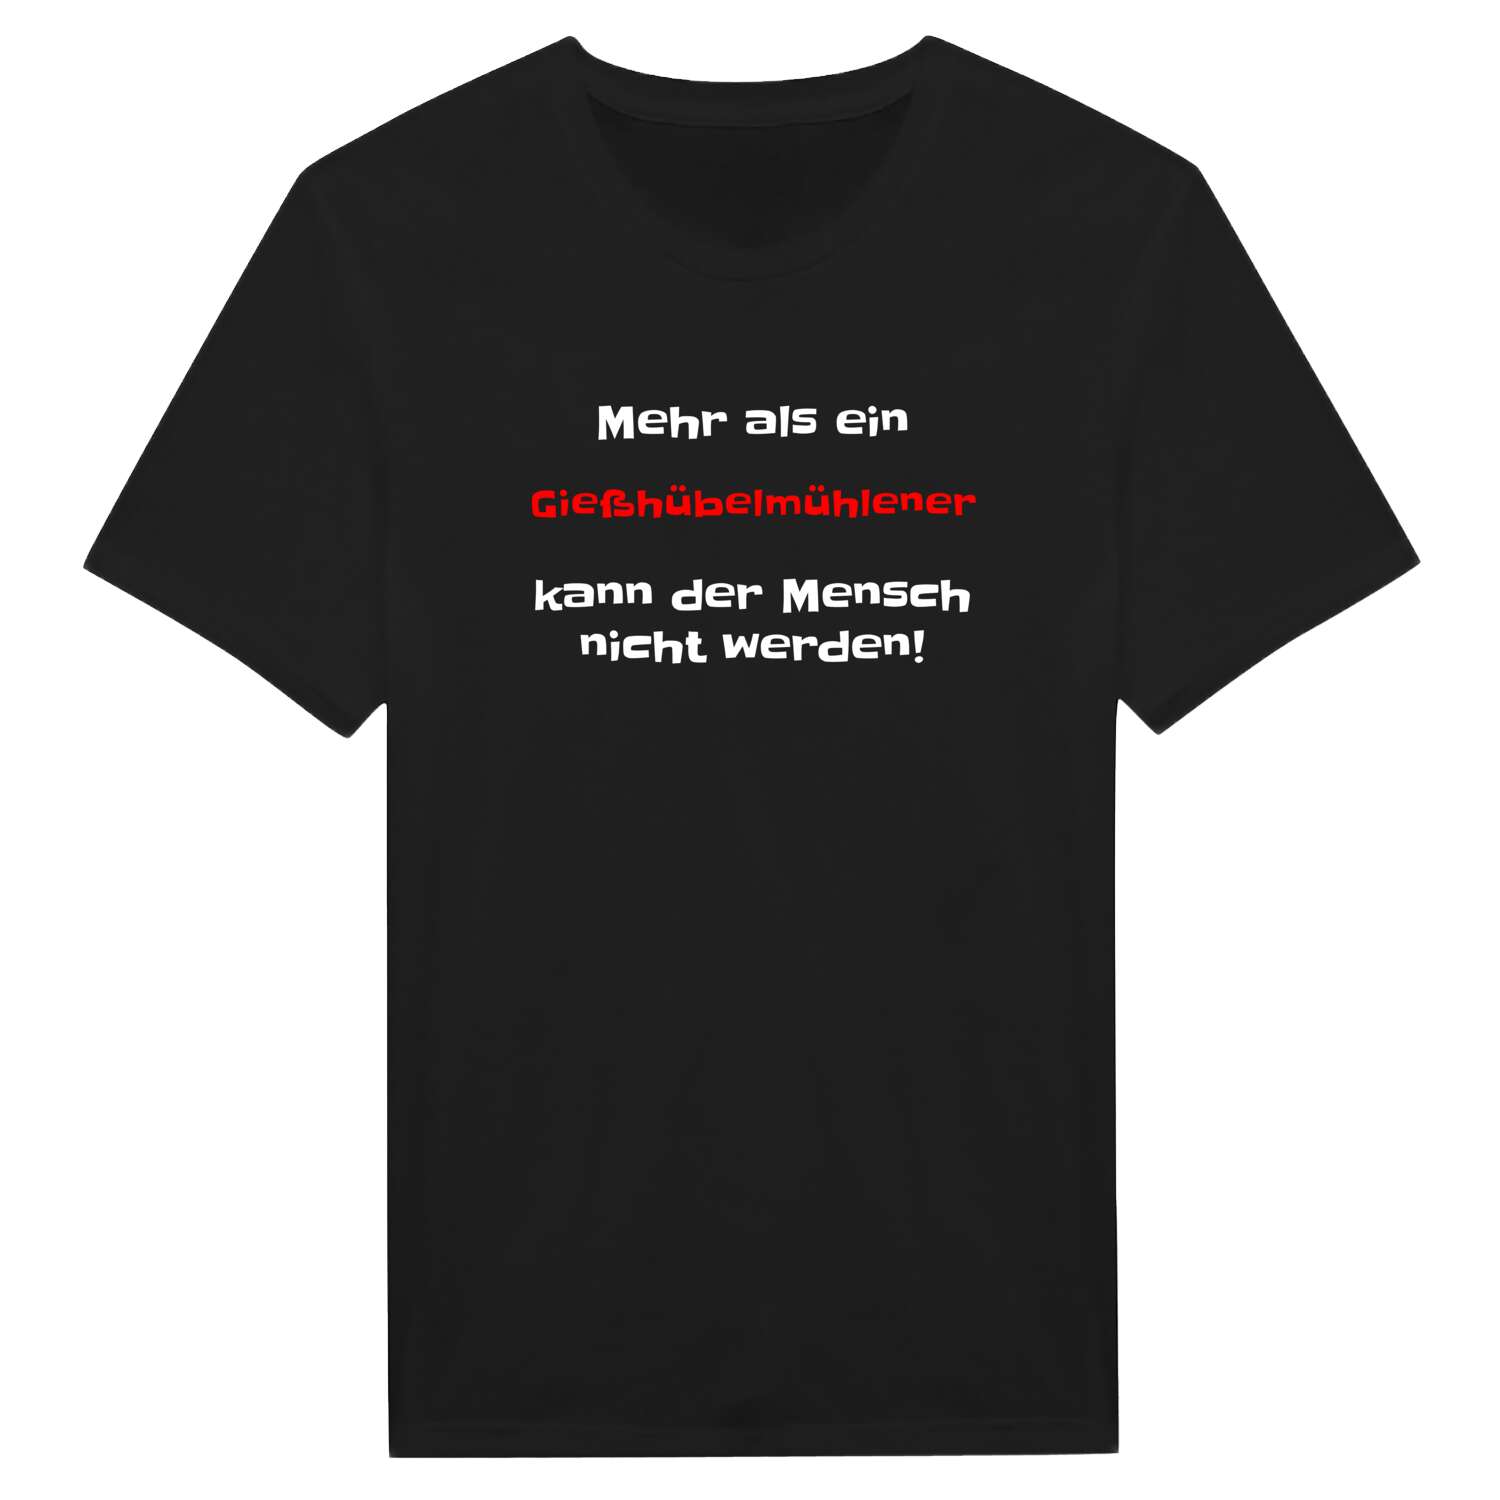 Gießhübelmühle T-Shirt »Mehr als ein«